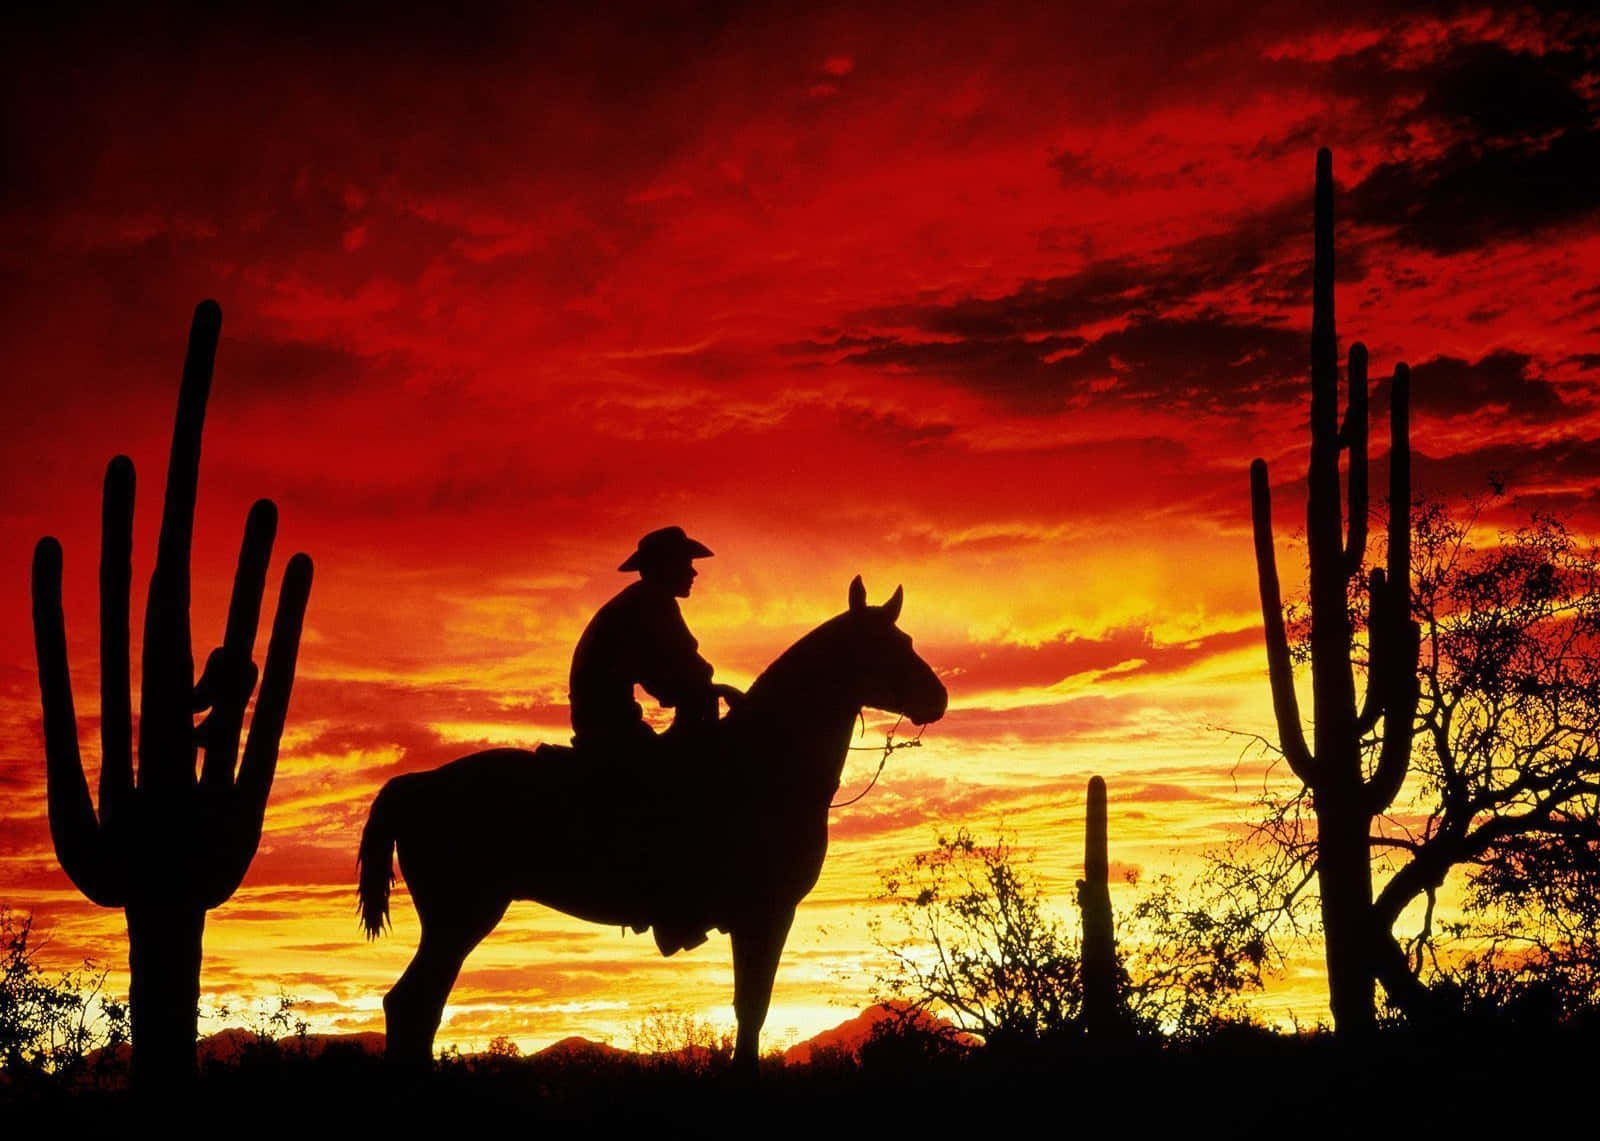 Fiery Red Sky Over Western Cowboy Desktop Wallpaper